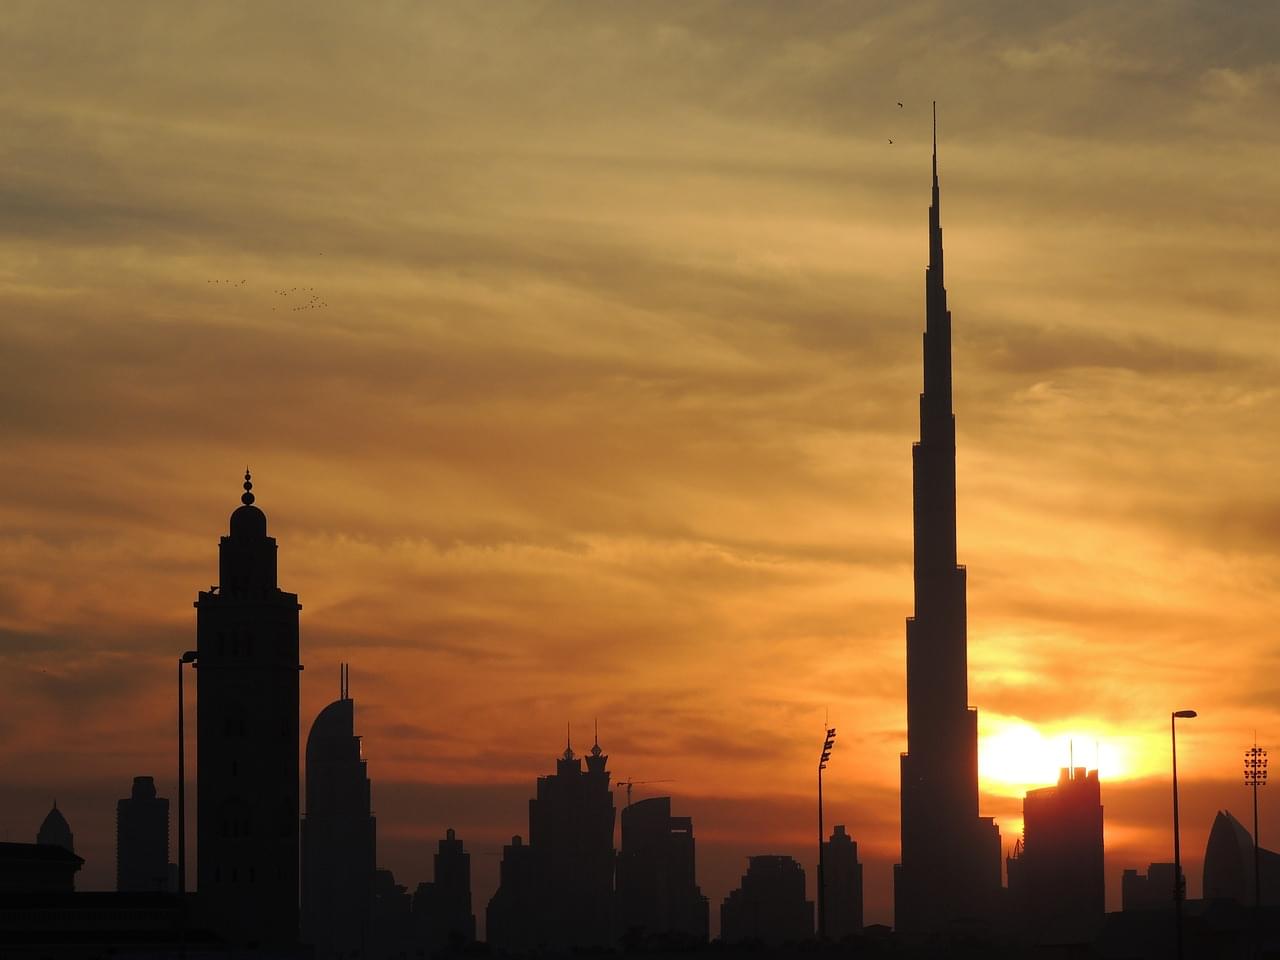 Explore Dubai at Sunset